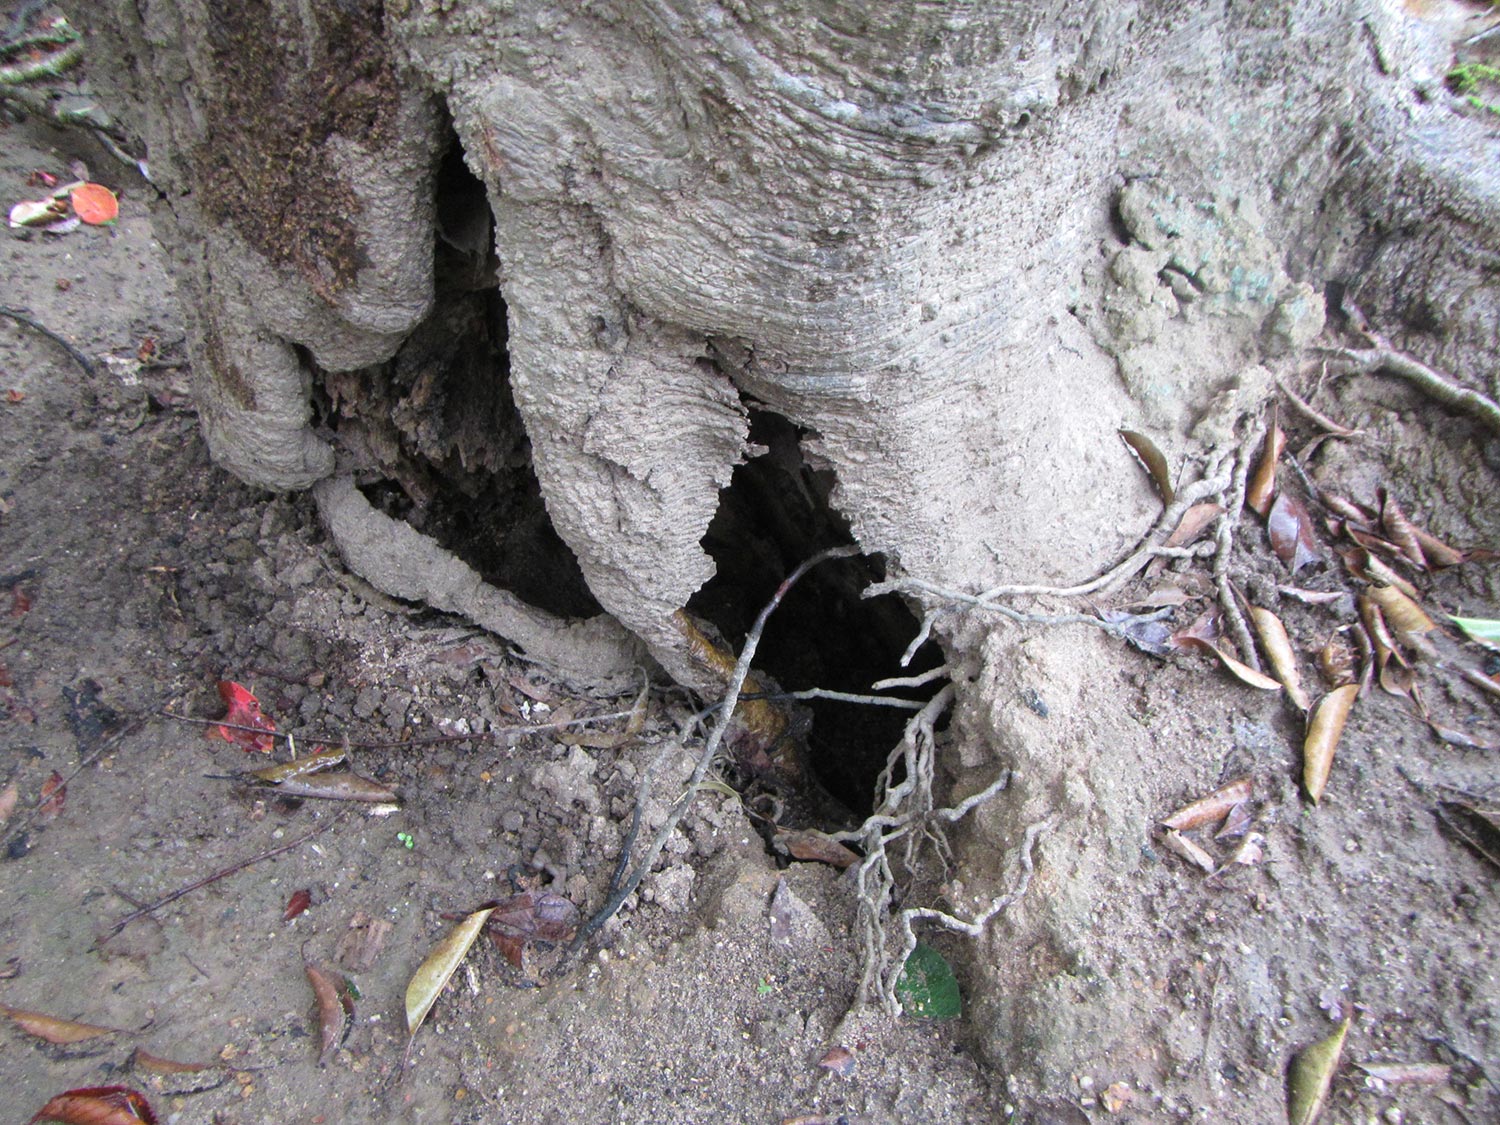 樹幹に空洞 ヒイラギモクセイ 症状と対処方法 樹木診断 樹木診断と松くい虫被害対策 出雲市農林水産部森林政策課